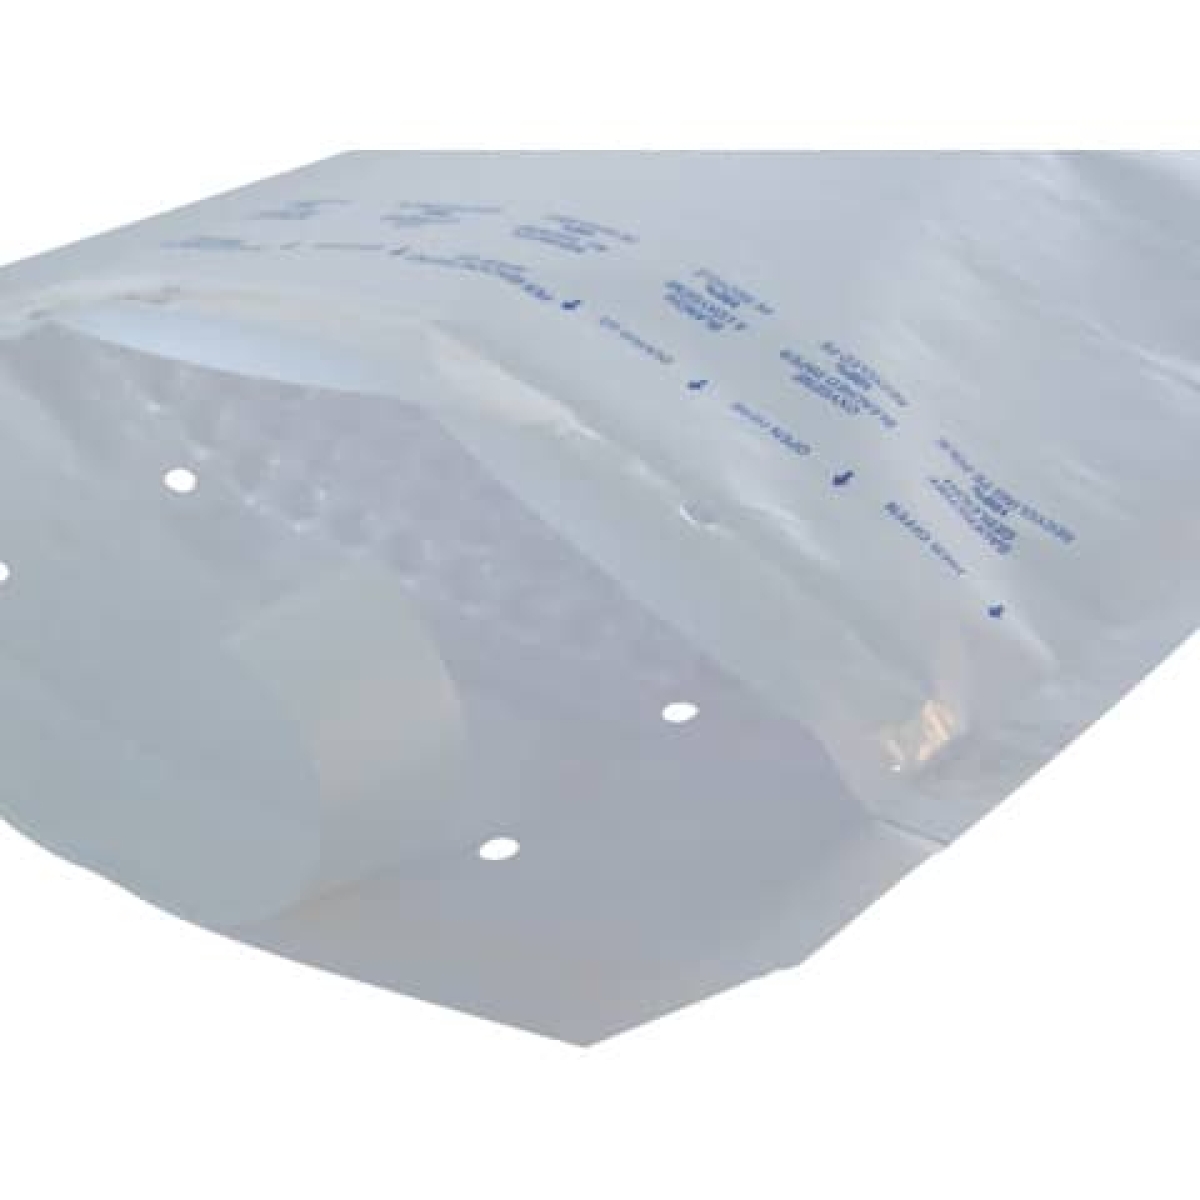 AROFOLLuftpolstertasche mit Fenster 4/D, 180x265mm, 100 Stück, weiß 2FVAF000514-Preis für 100 StückArtikel-Nr: 4009445005140